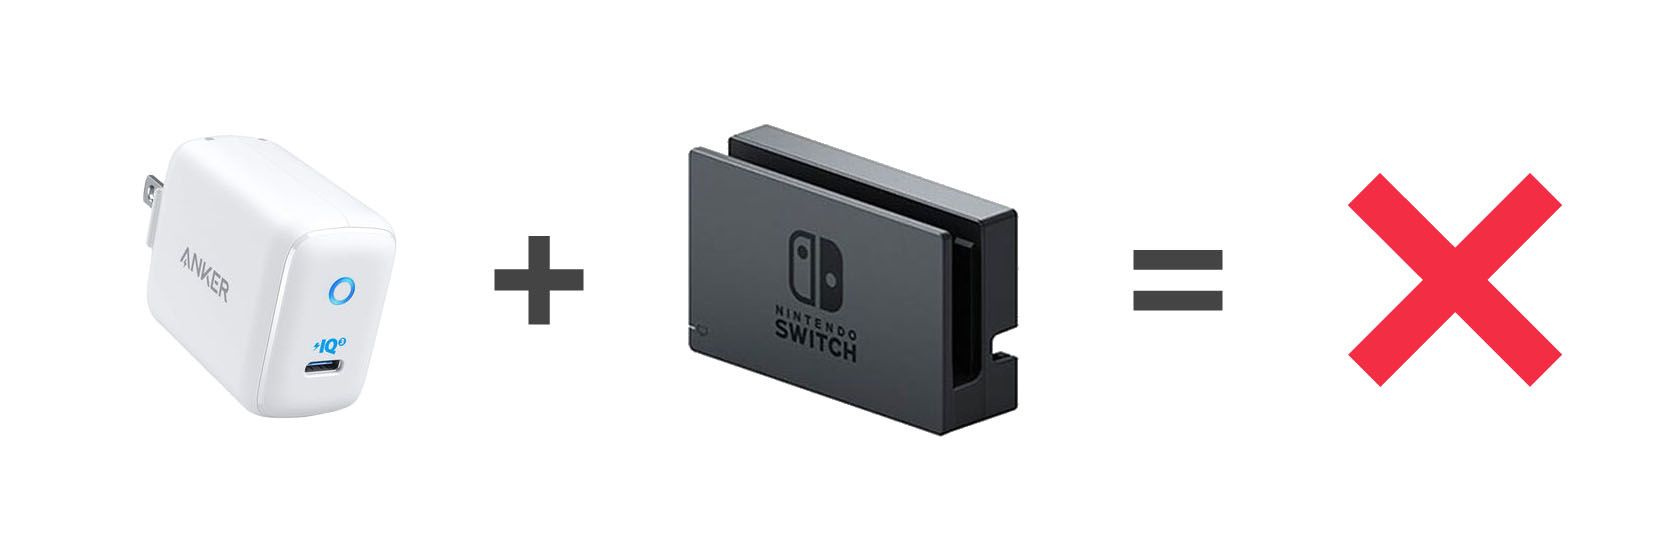 Anker PowerPort III mini + Nintendo Switch ドックではテレビモードで遊ぶことはできなかった